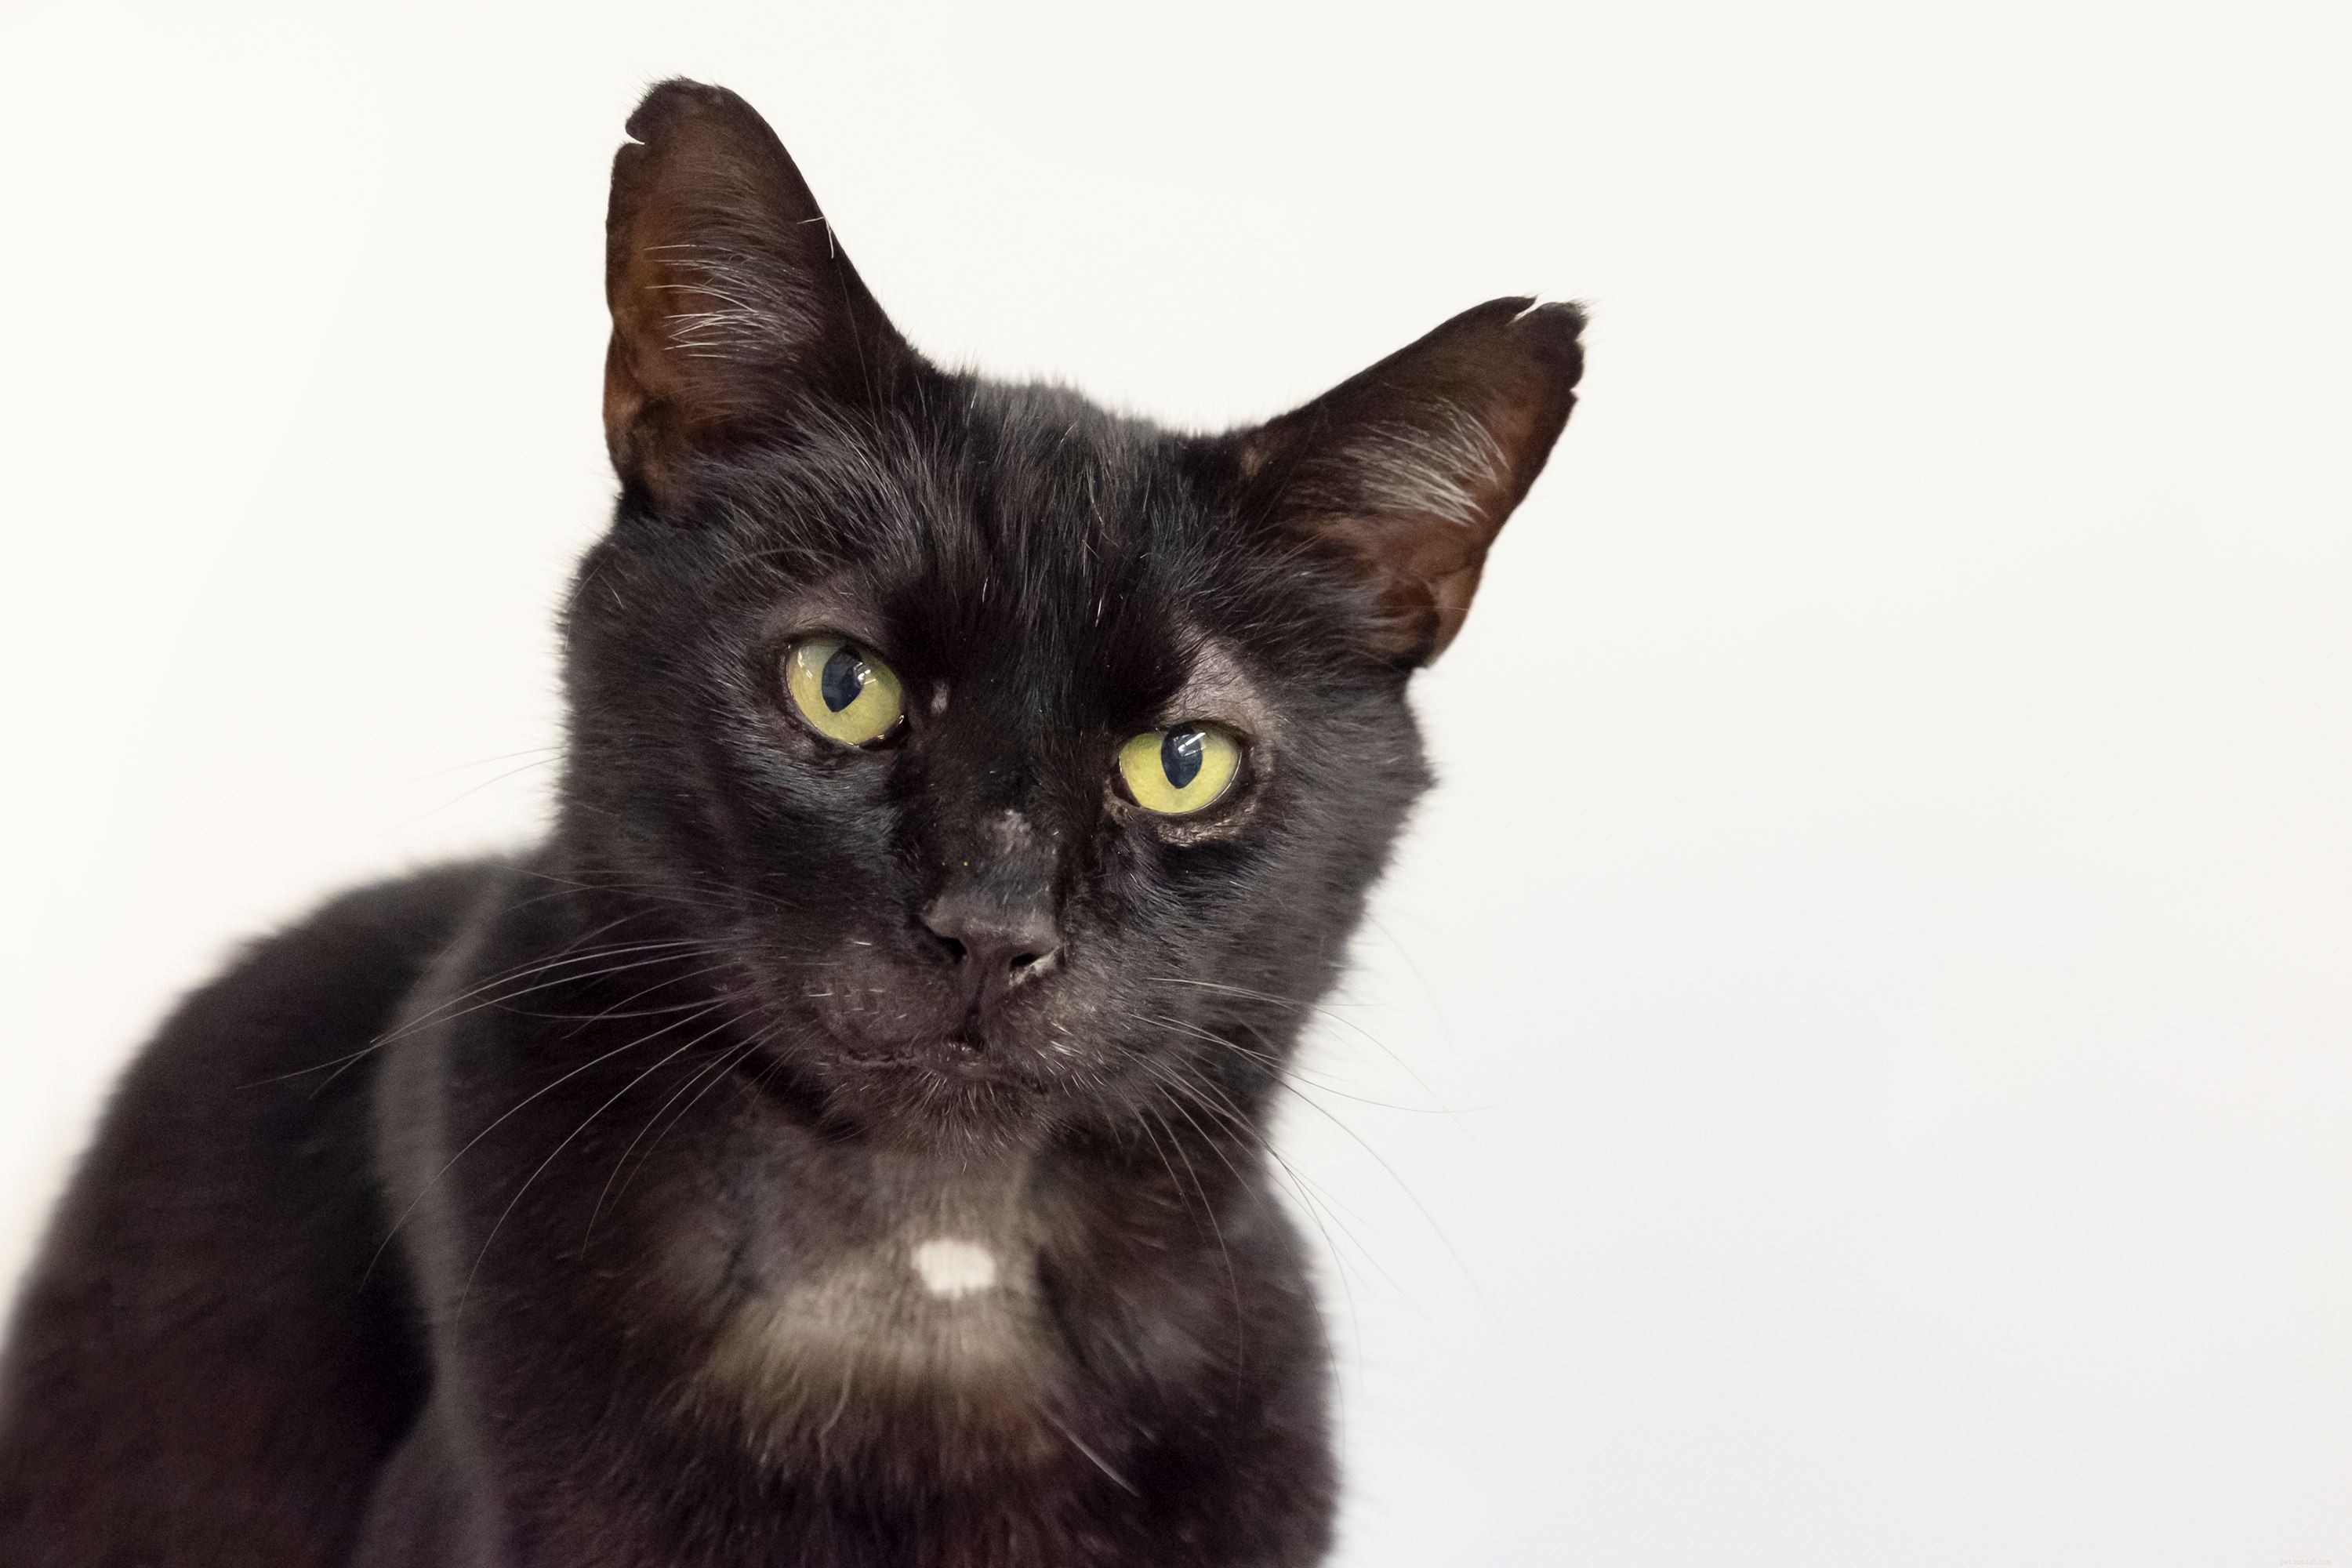 Voluntários da Cats Protection devolveram um gato encontrado em Essex com seu dono em Manchester depois que ele desapareceu há quatro anos